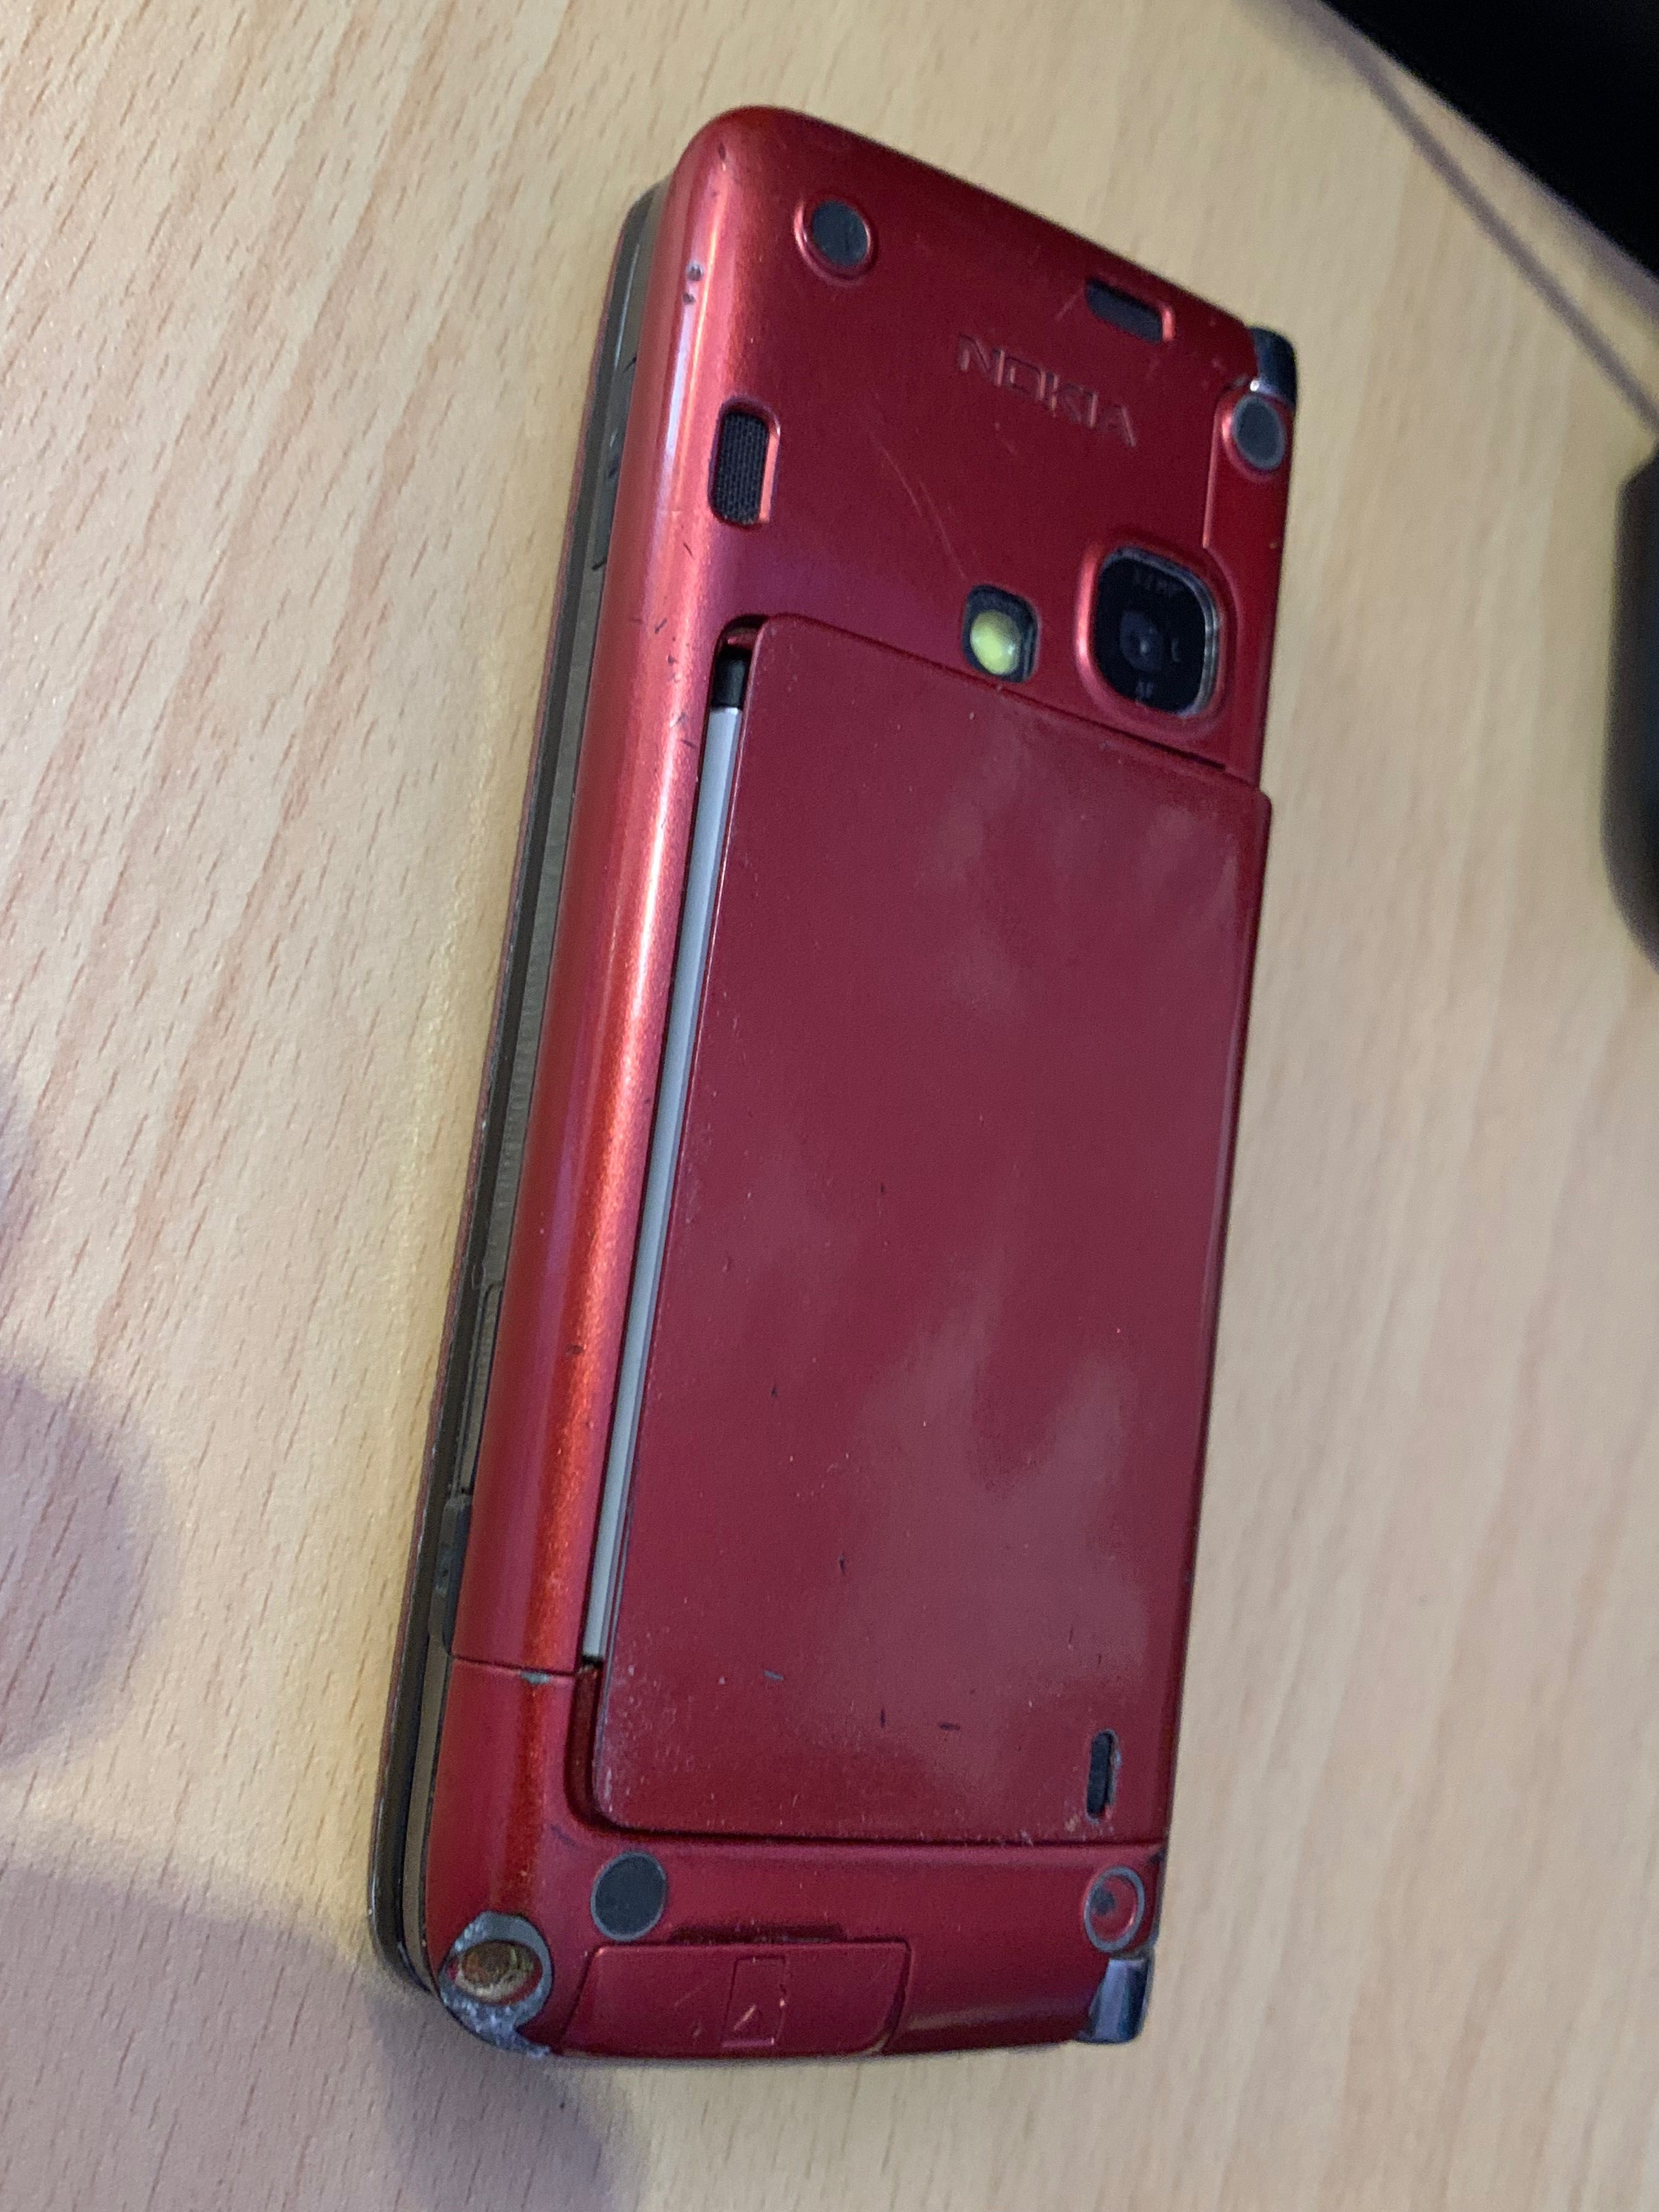 Рядък модел Nokia E90